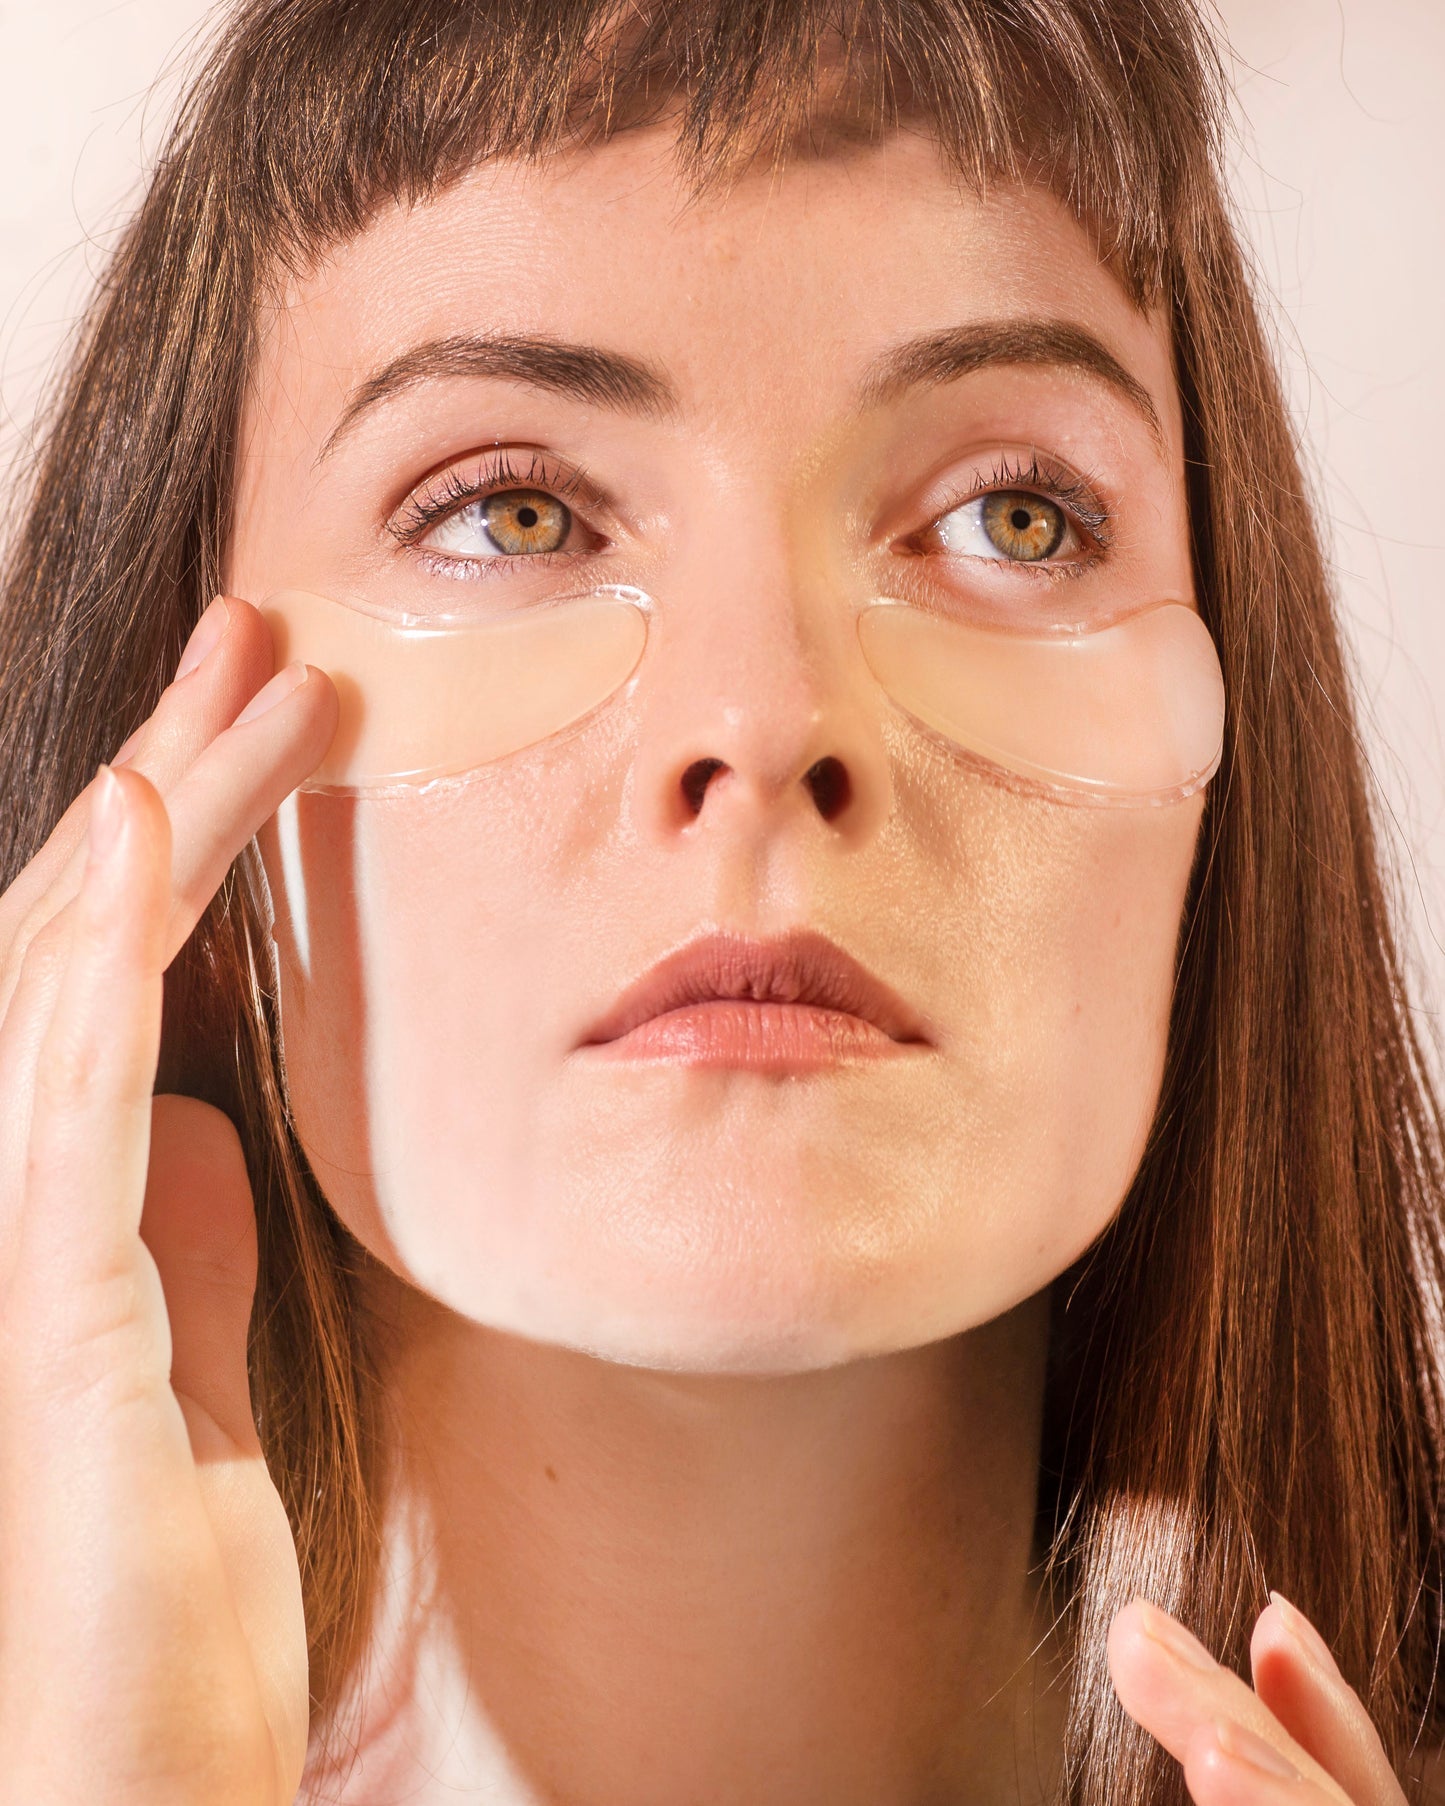 Skin Plumping Eye Pads beauty patch nighttime treatment | Dreambox Beauty